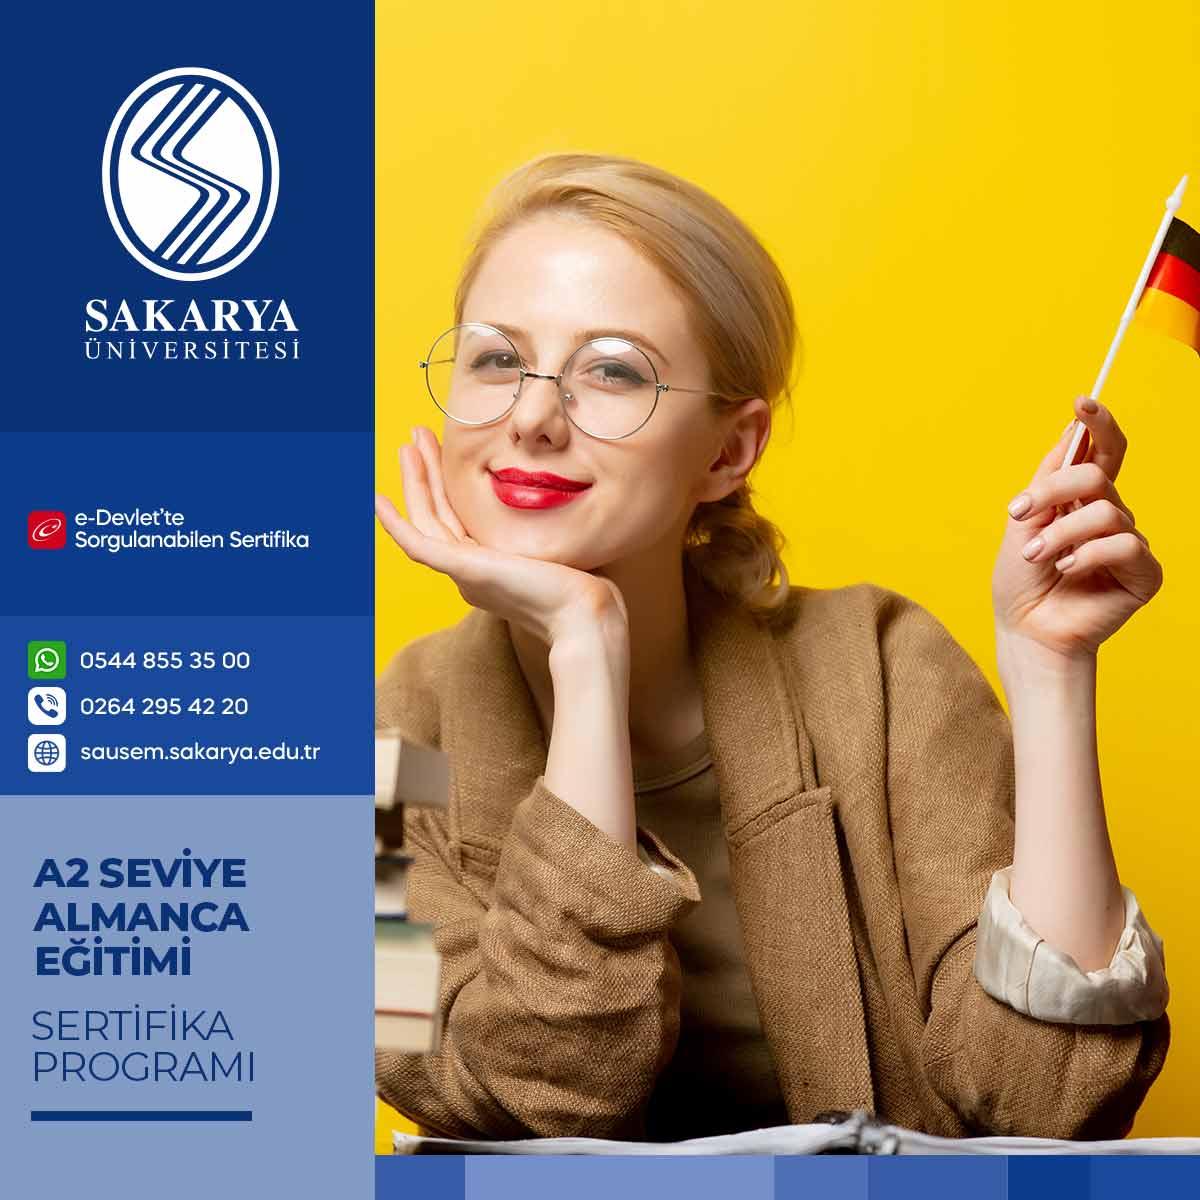 A2 Seviye Almanca Eğitimi Sertifika Programı